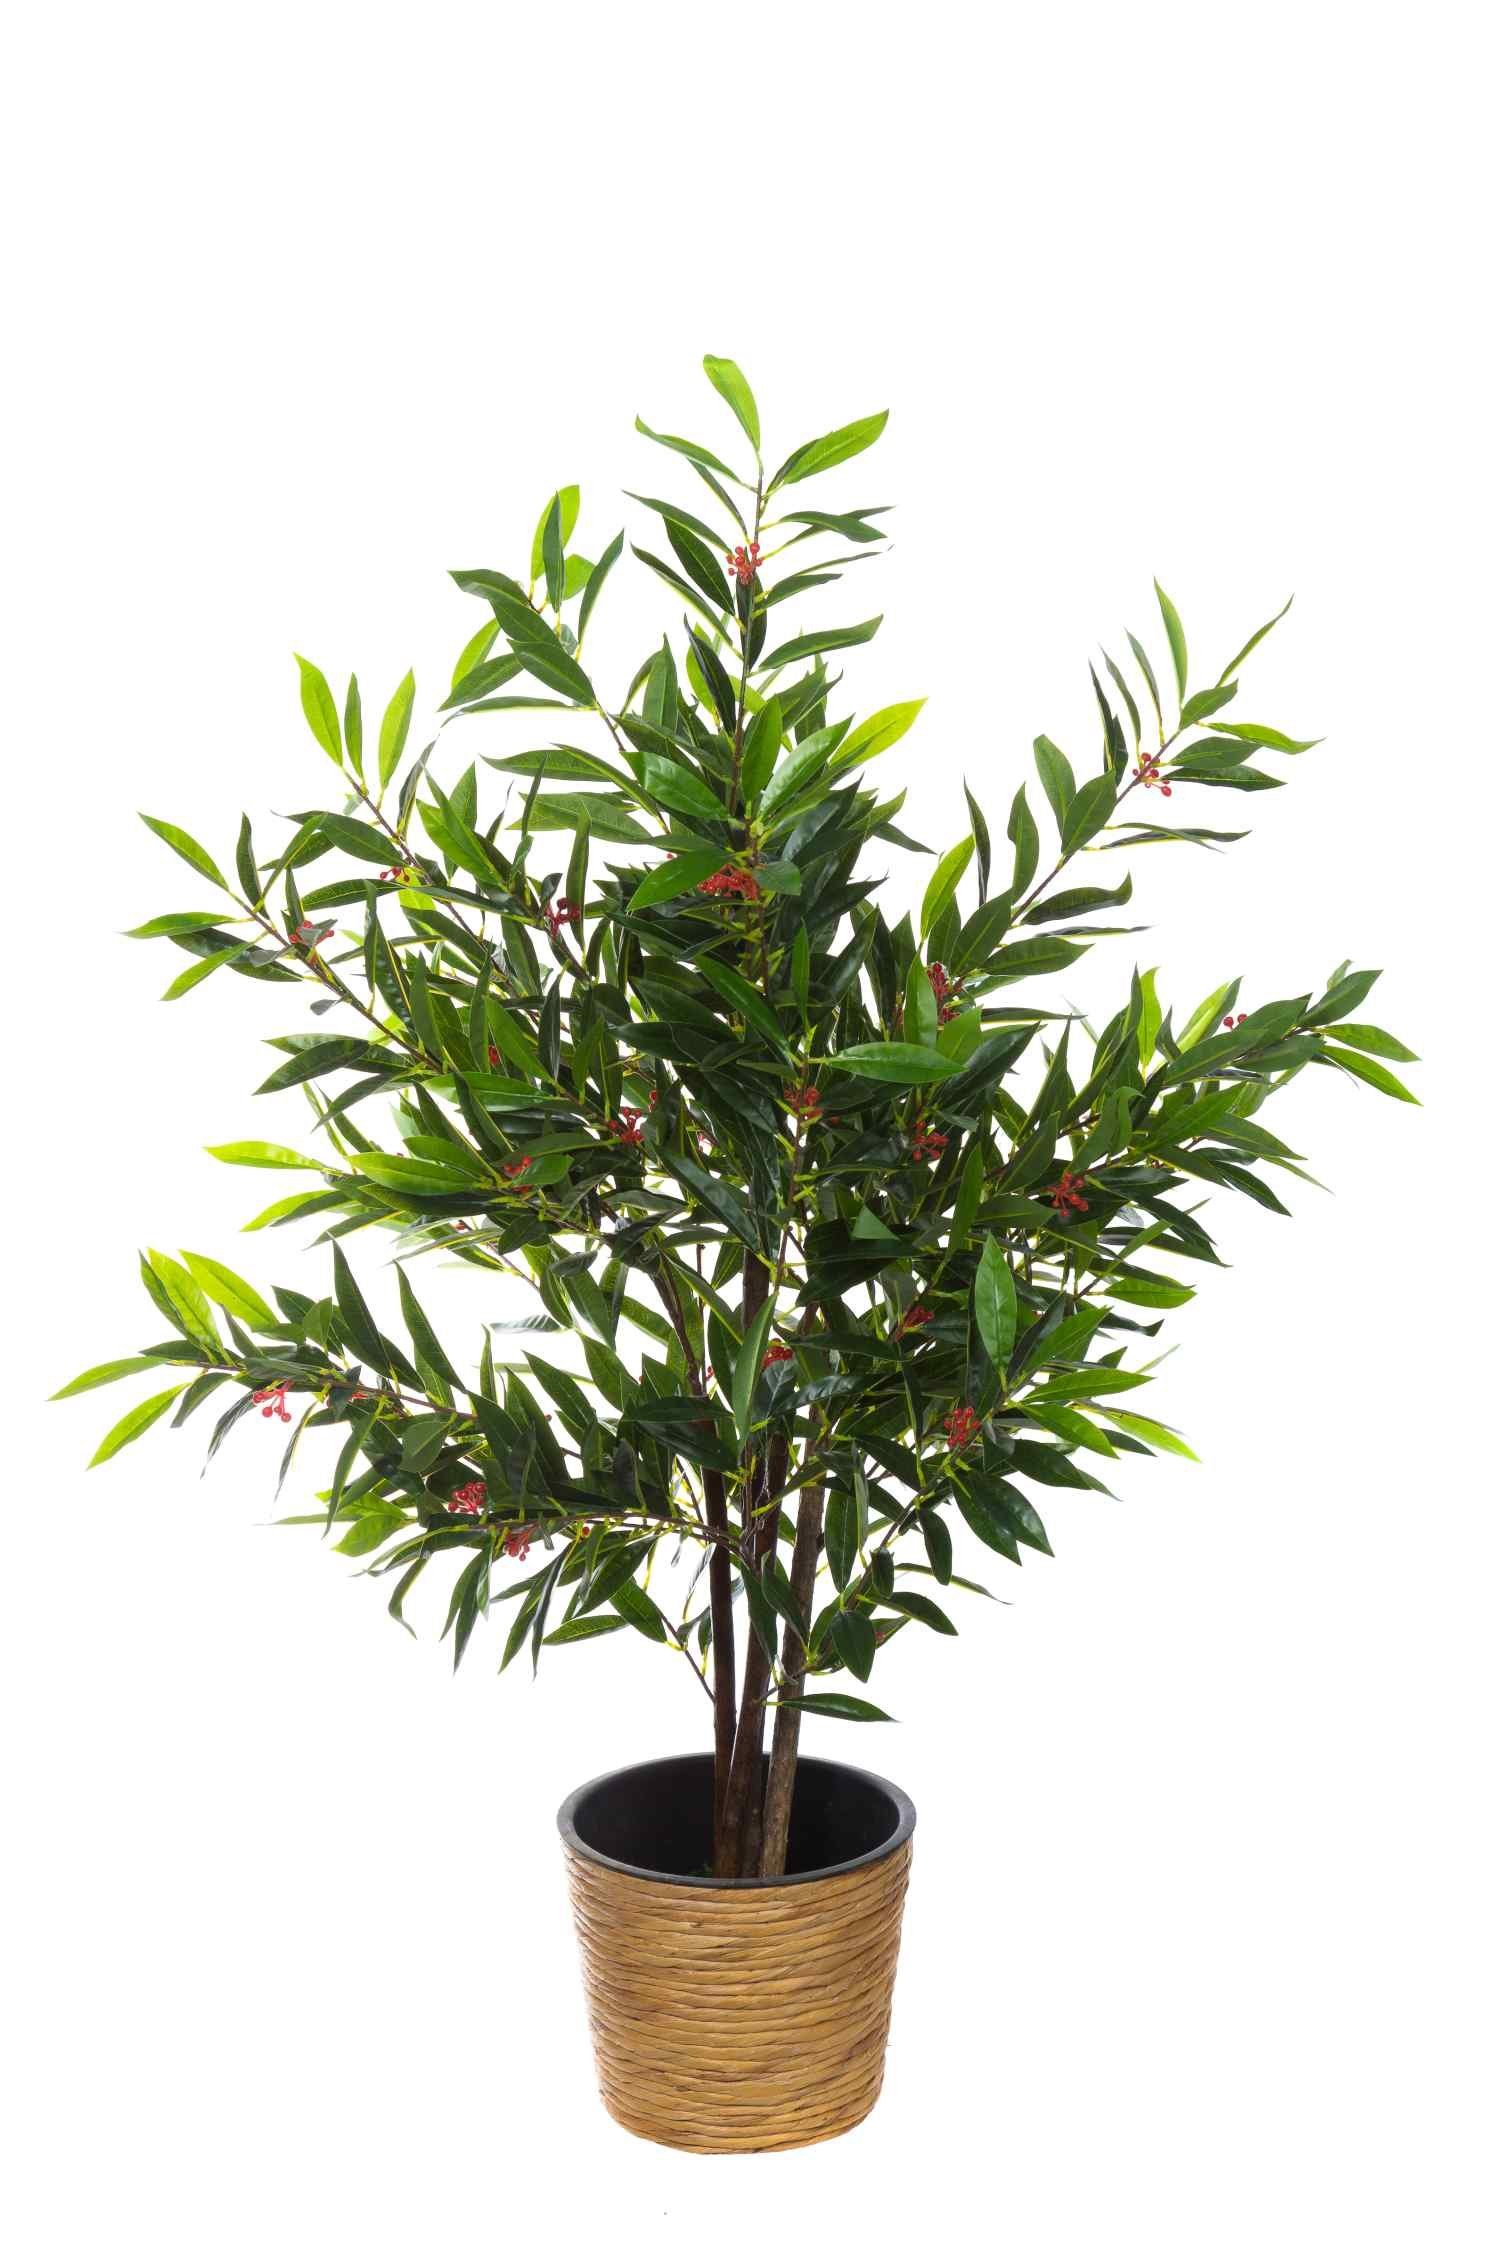 BIRENDY Dekobaum künstliche Kunstpflanze 120cm XXL Große Baum Olivenbaum Blüte in JWS2060-2